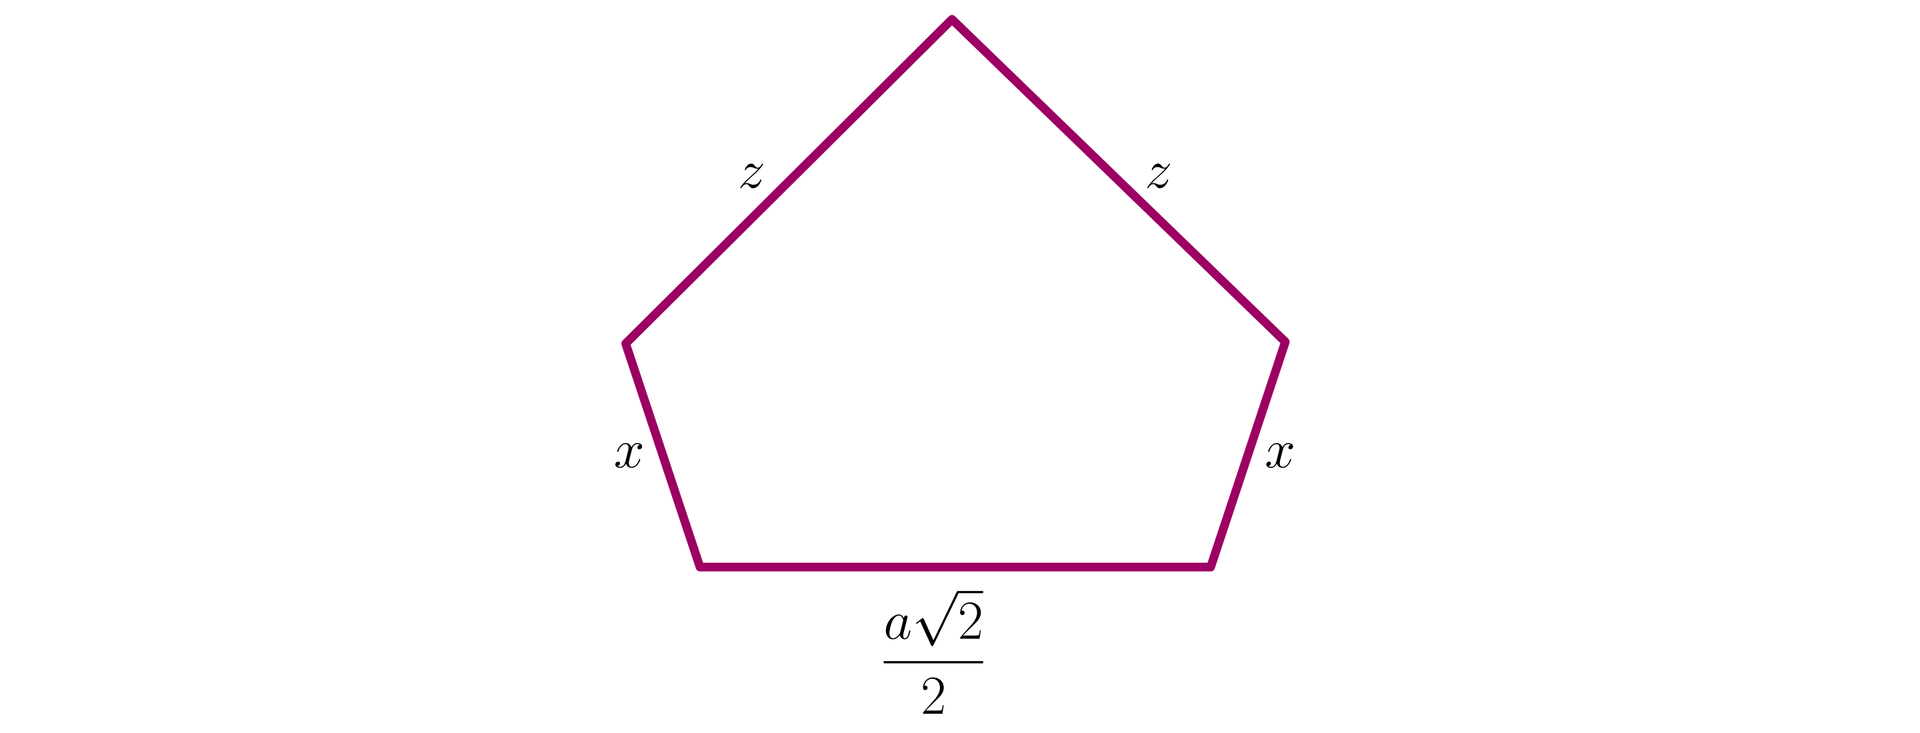 Na ilustracji przedstawiono pięciokąt o bokach długości a22, x, x, z oraz z. 